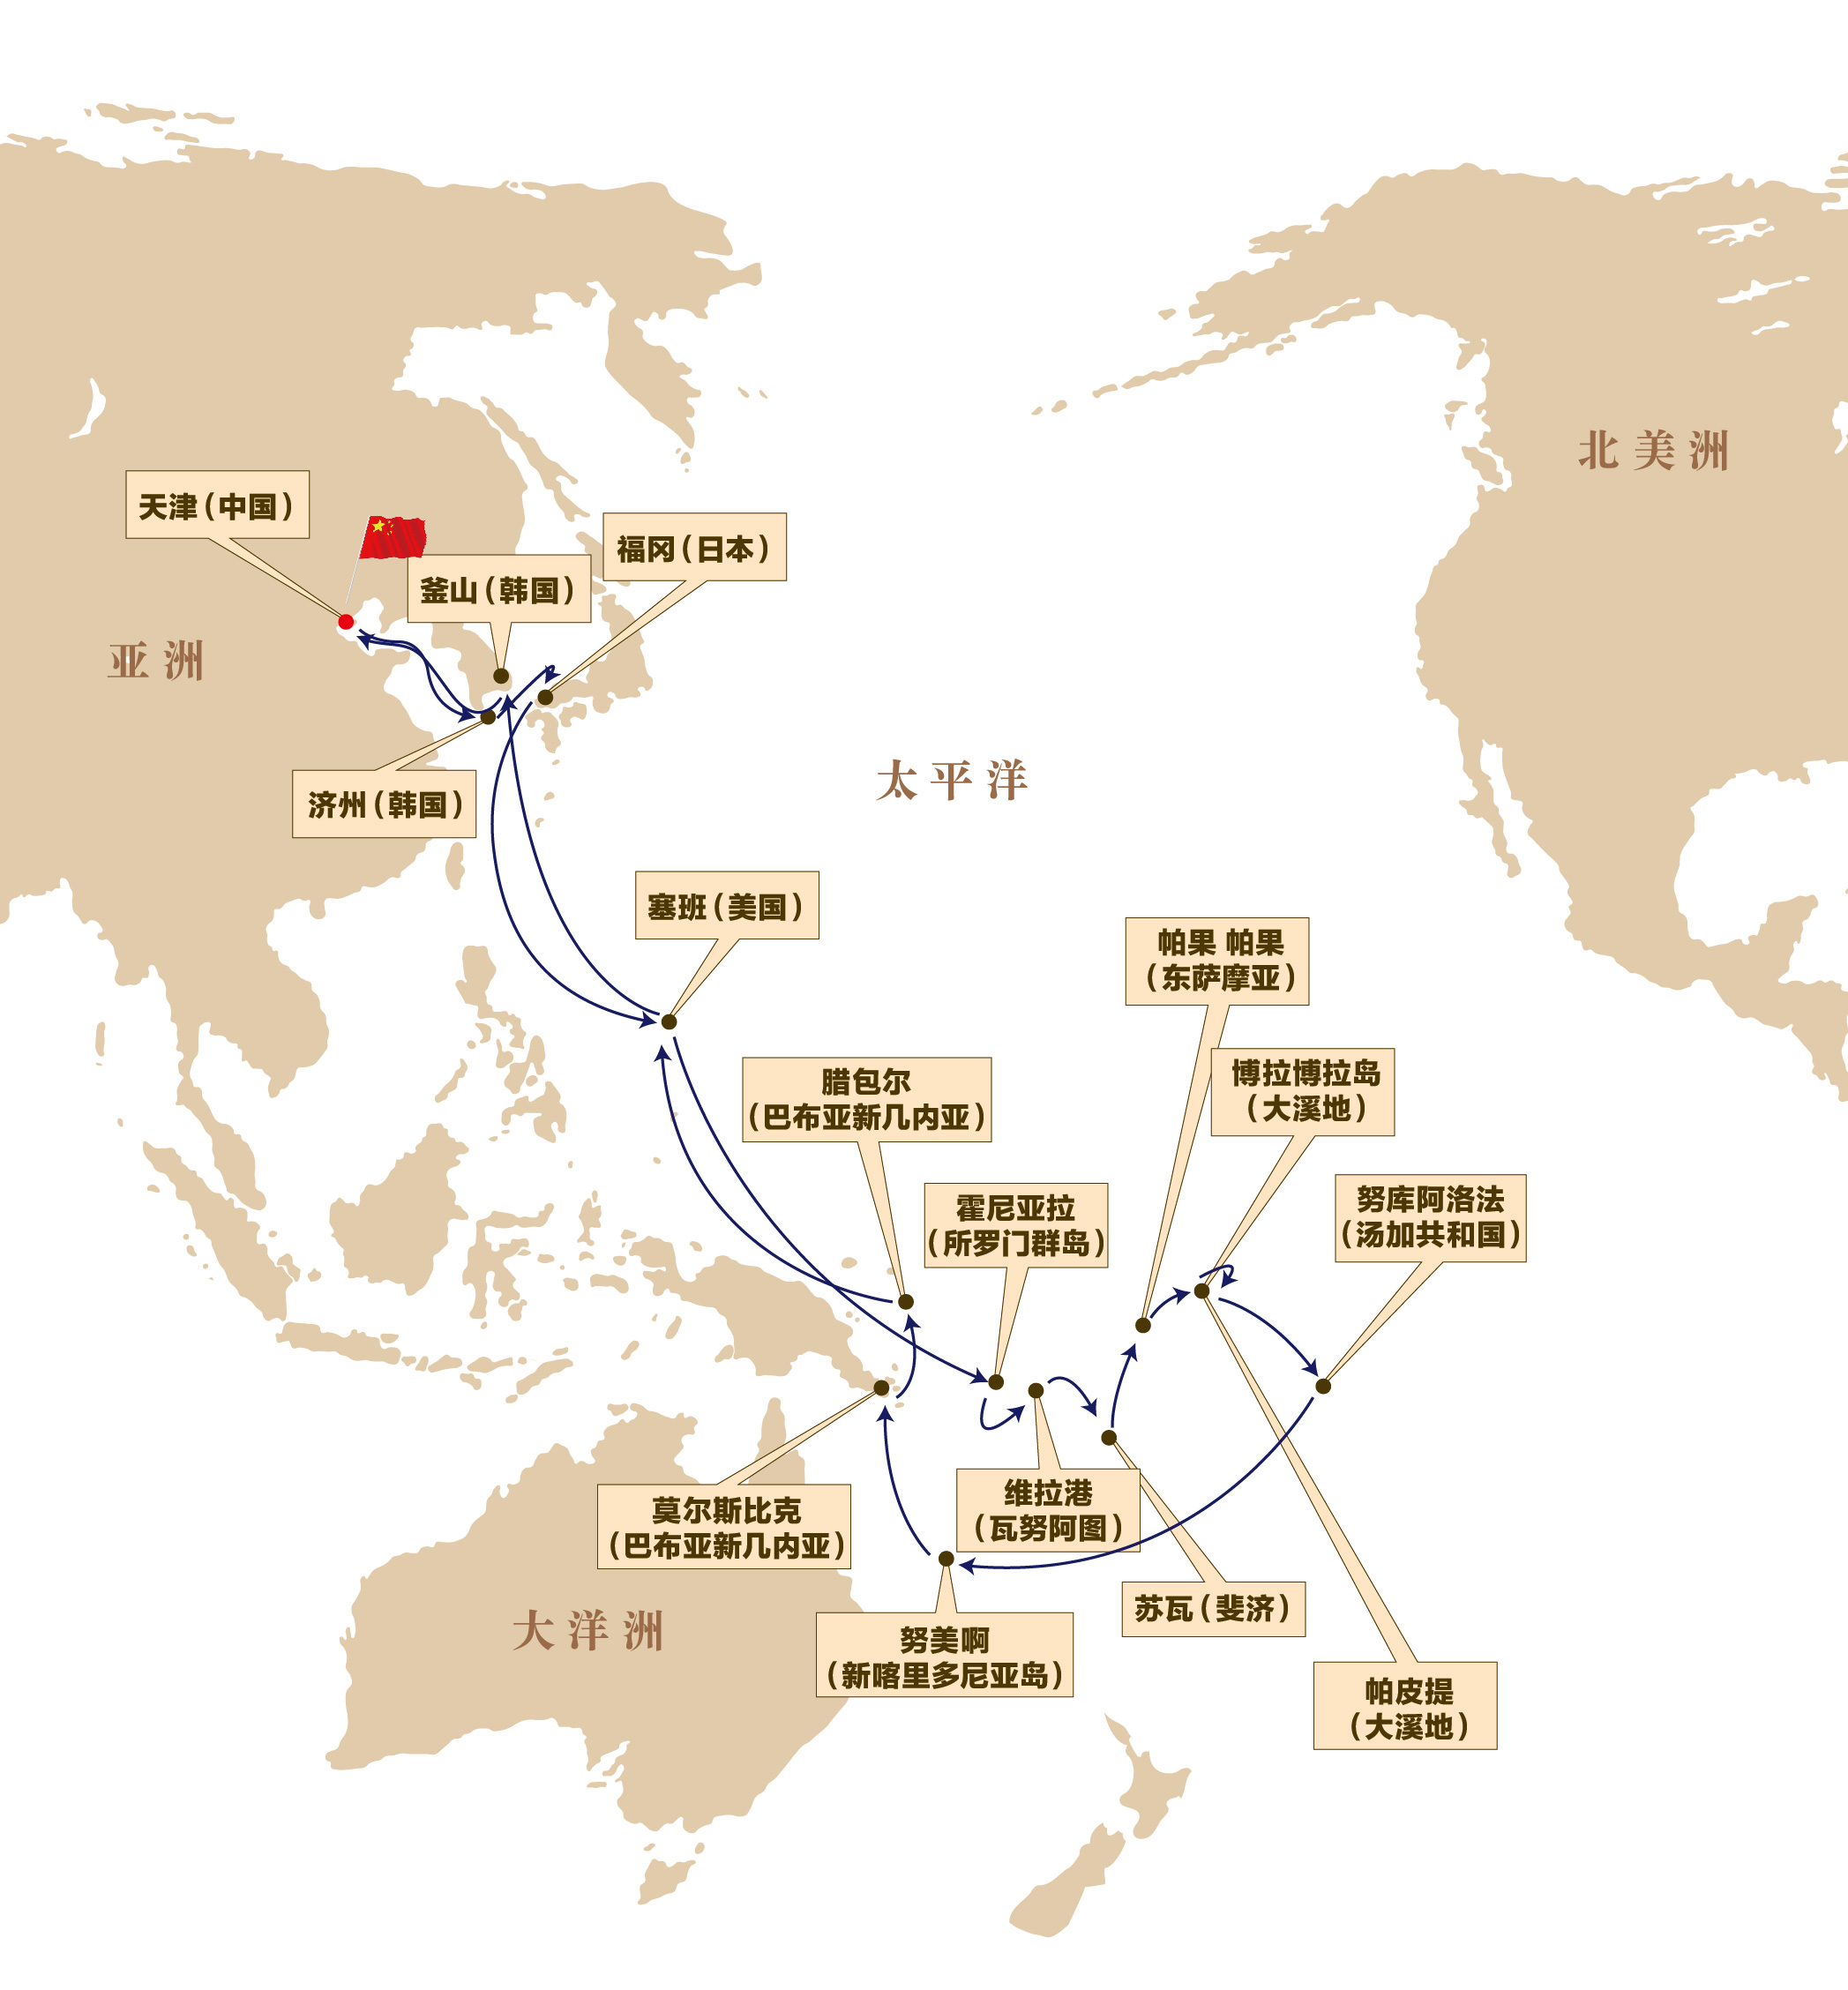 邮轮 同样是大西洋号 2016年 它将途经13个目的地 完成环南太平洋之旅